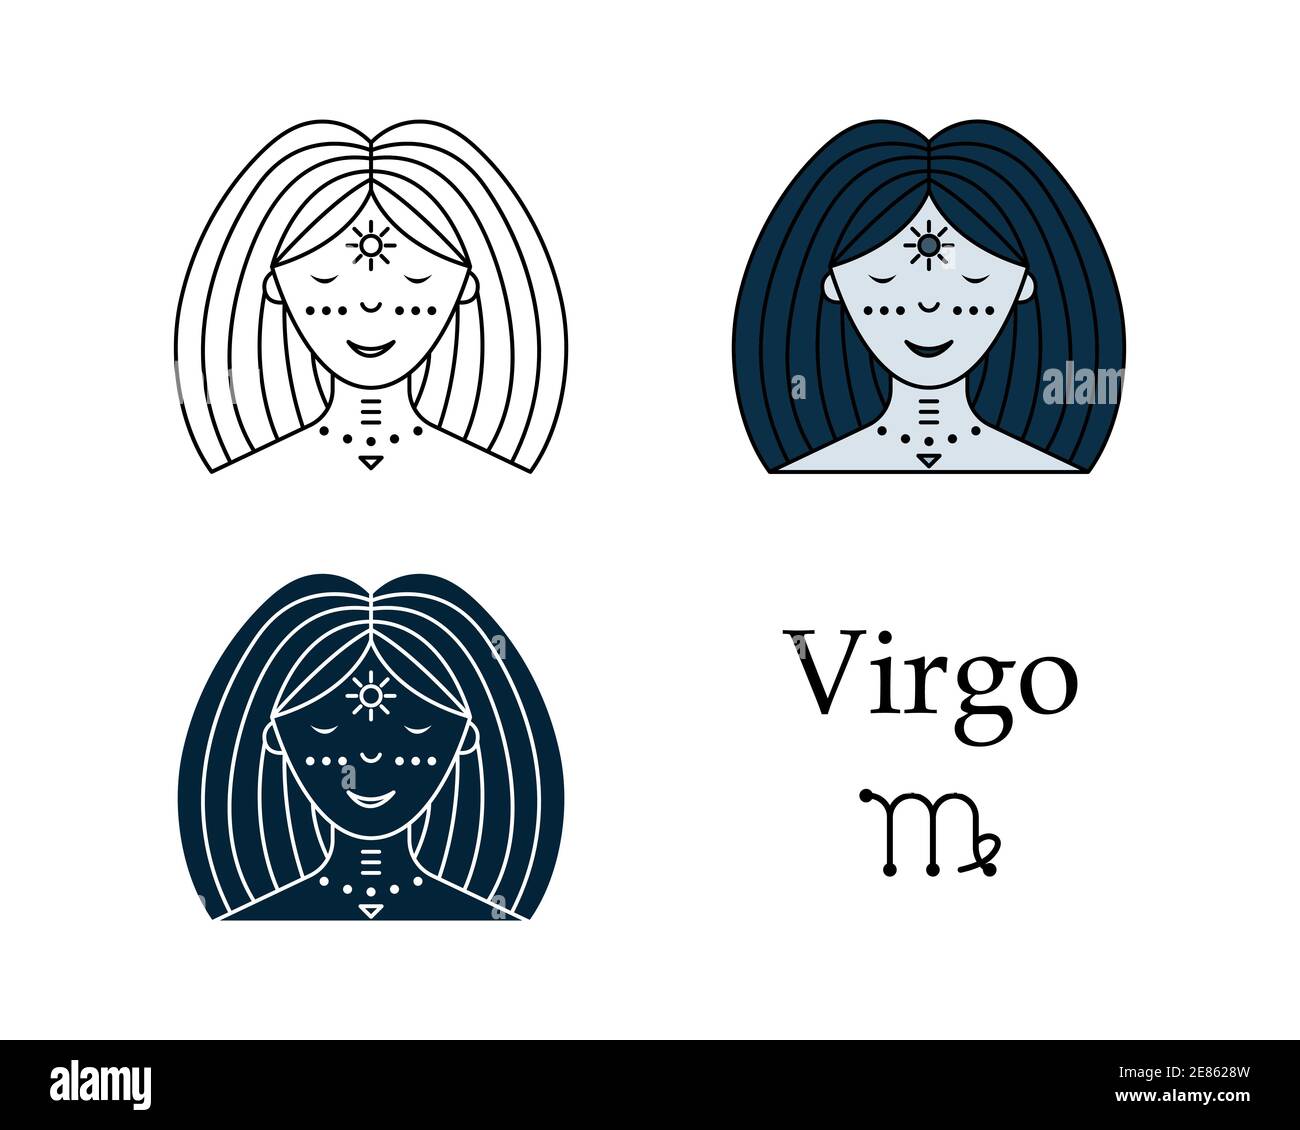 Virgo Zodiac Art  LauriesArt111  Digital Art Religion Philosophy   Astrology Astrology  Zodiac Zodiac Signs Virgo  ArtPal